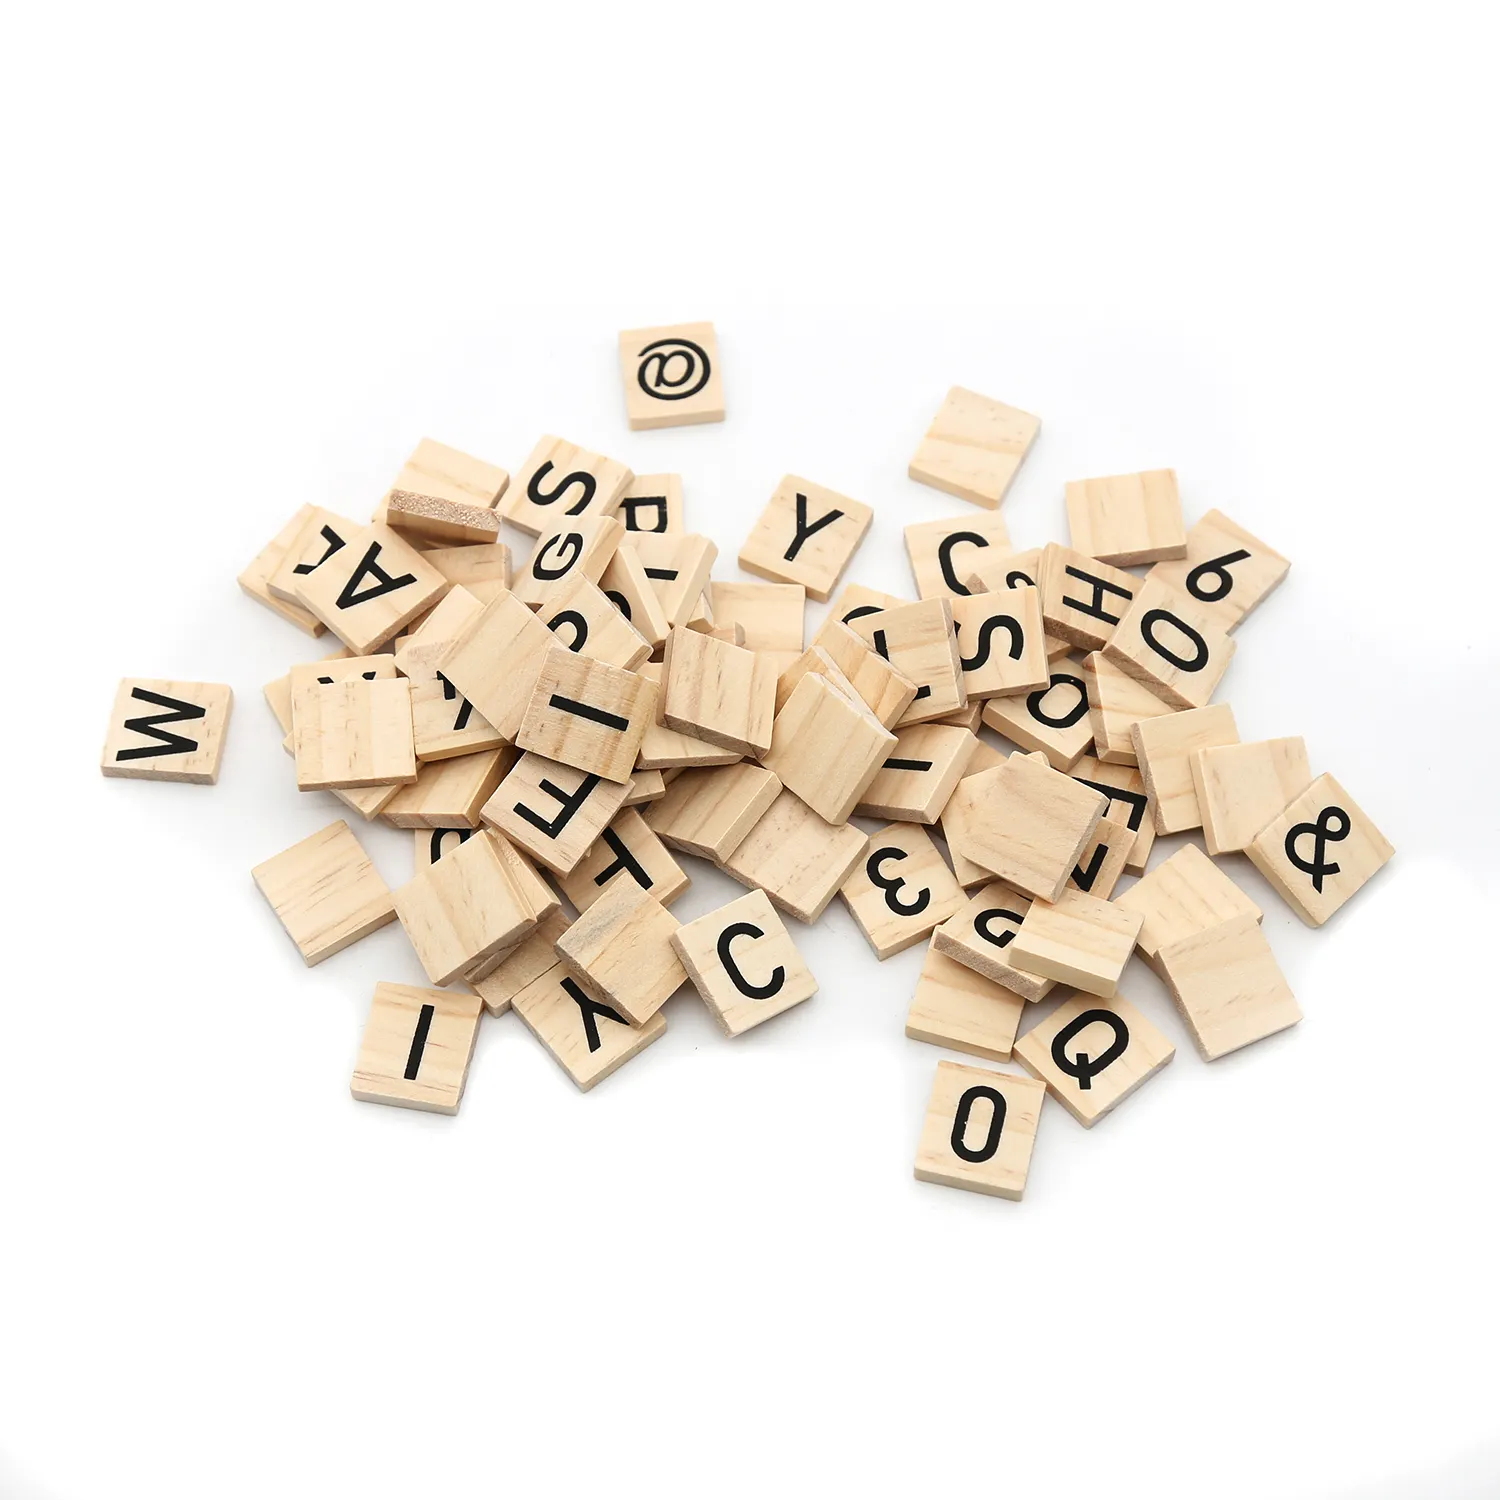 200 En Bois Scrabble Carreaux noir lettres & chiffres pour l'artisanat art bois 